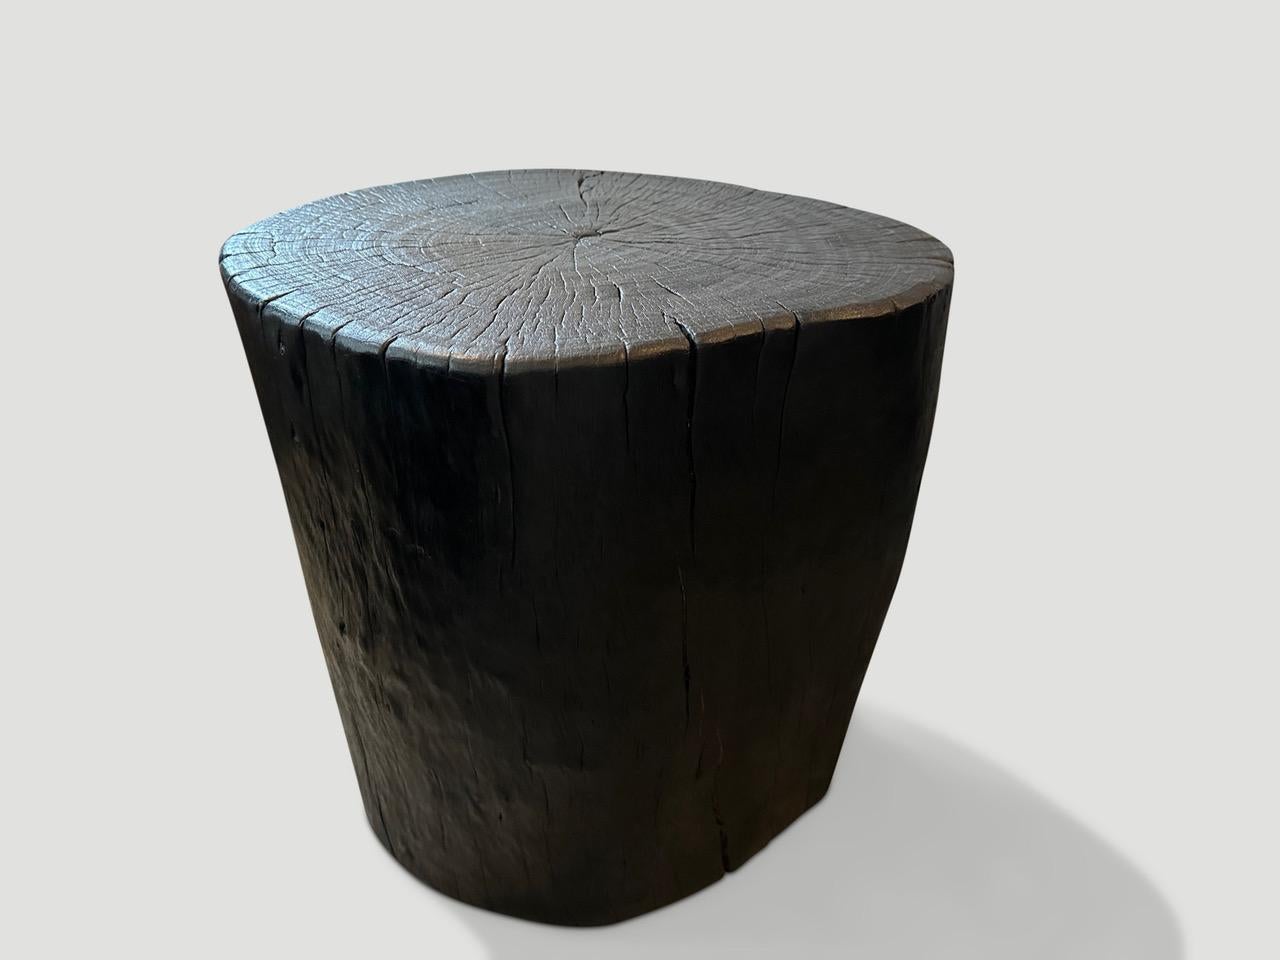 Beistelltisch aus recyceltem Litschi-Holz. Gekohlt, geschliffen und versiegelt, wobei die natürliche organische Form respektiert wird und die schöne Holzmaserung zum Vorschein kommt. 

Die Triple Burnt Collection'S ist eine einzigartige moderne